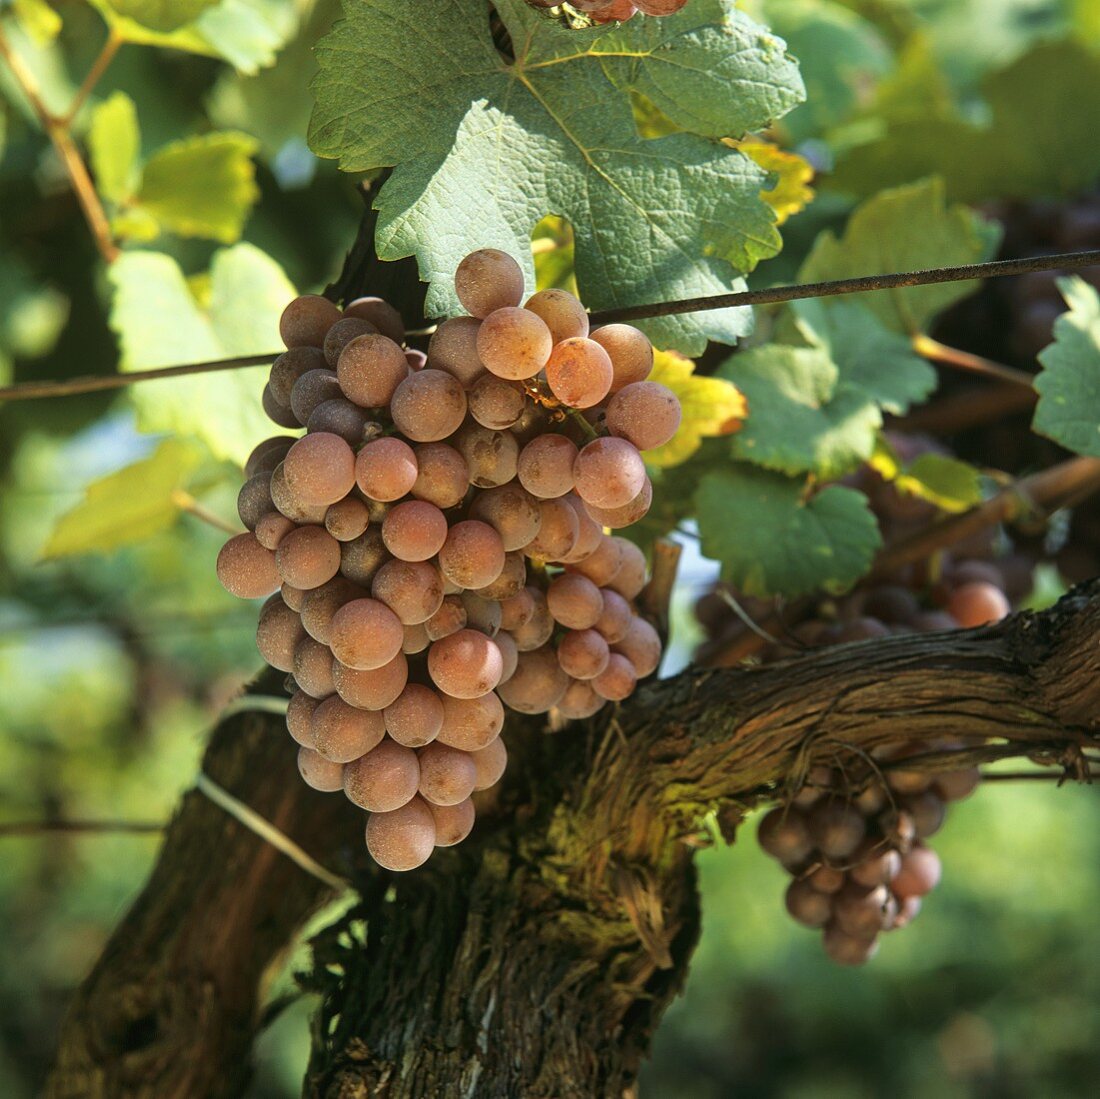 Gewürztraminer grapes on the vine, Tramin, S. Tyrol